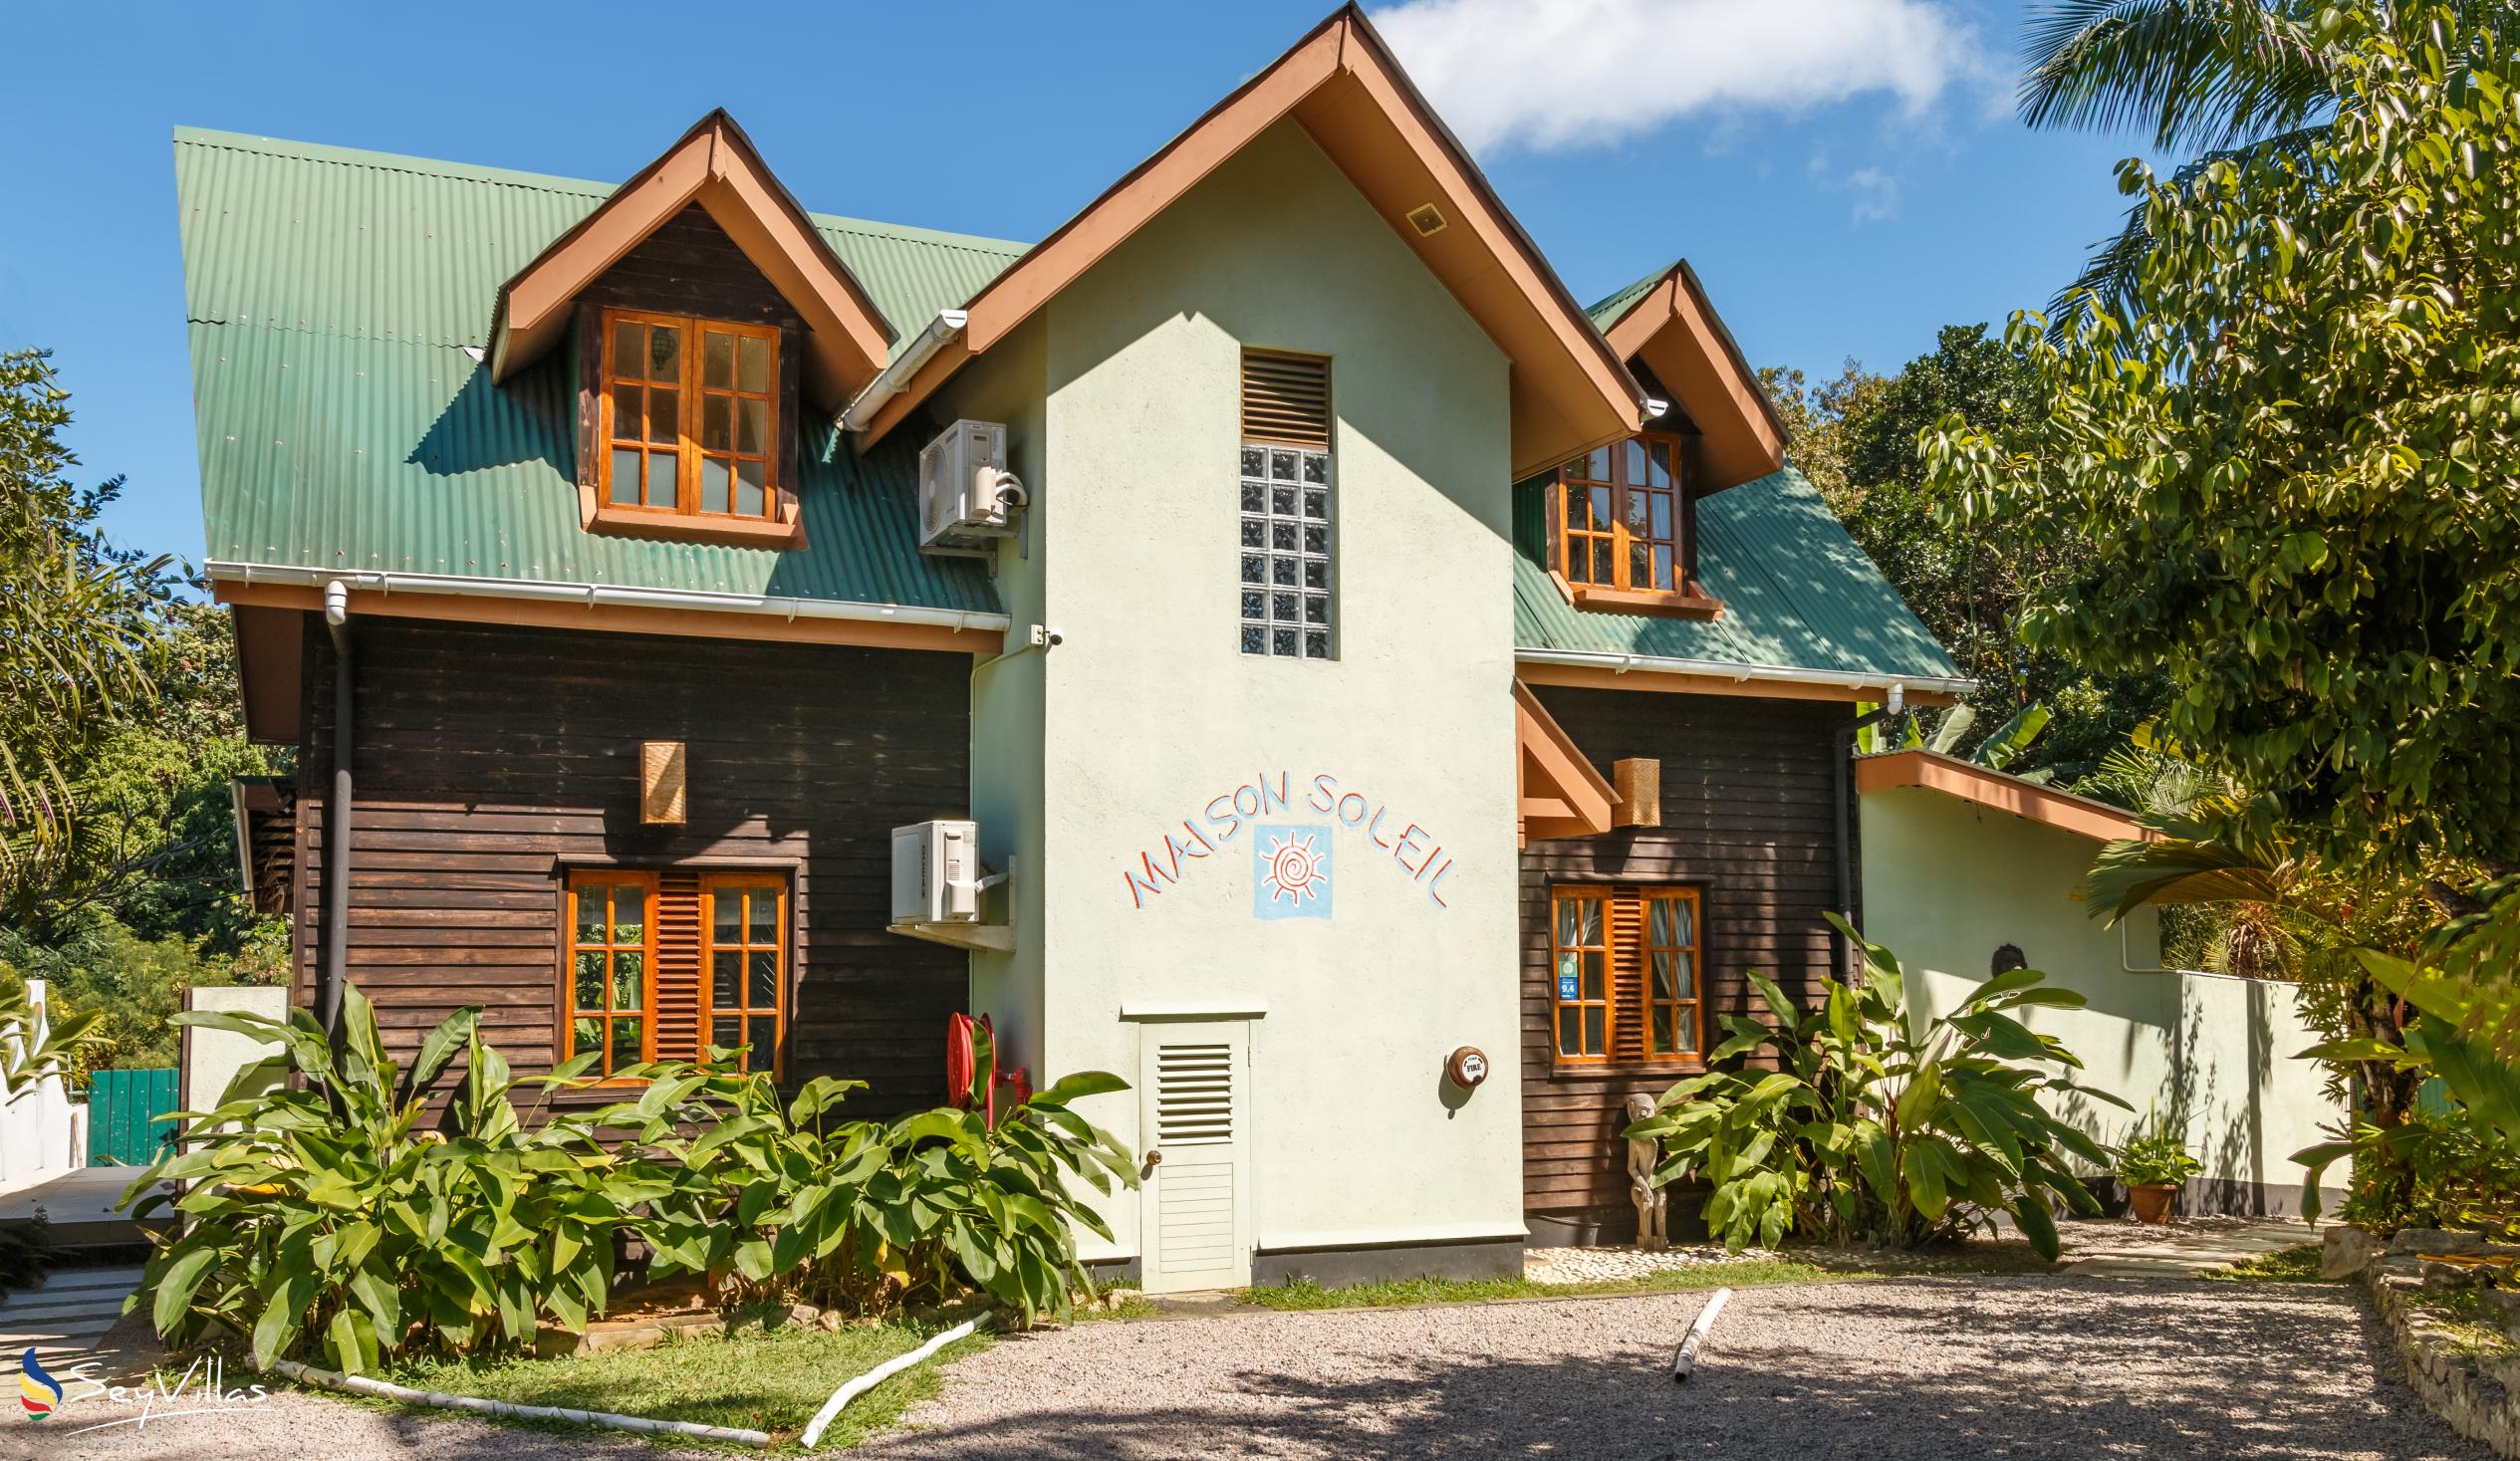 Foto 1: Maison Soleil - Extérieur - Mahé (Seychelles)